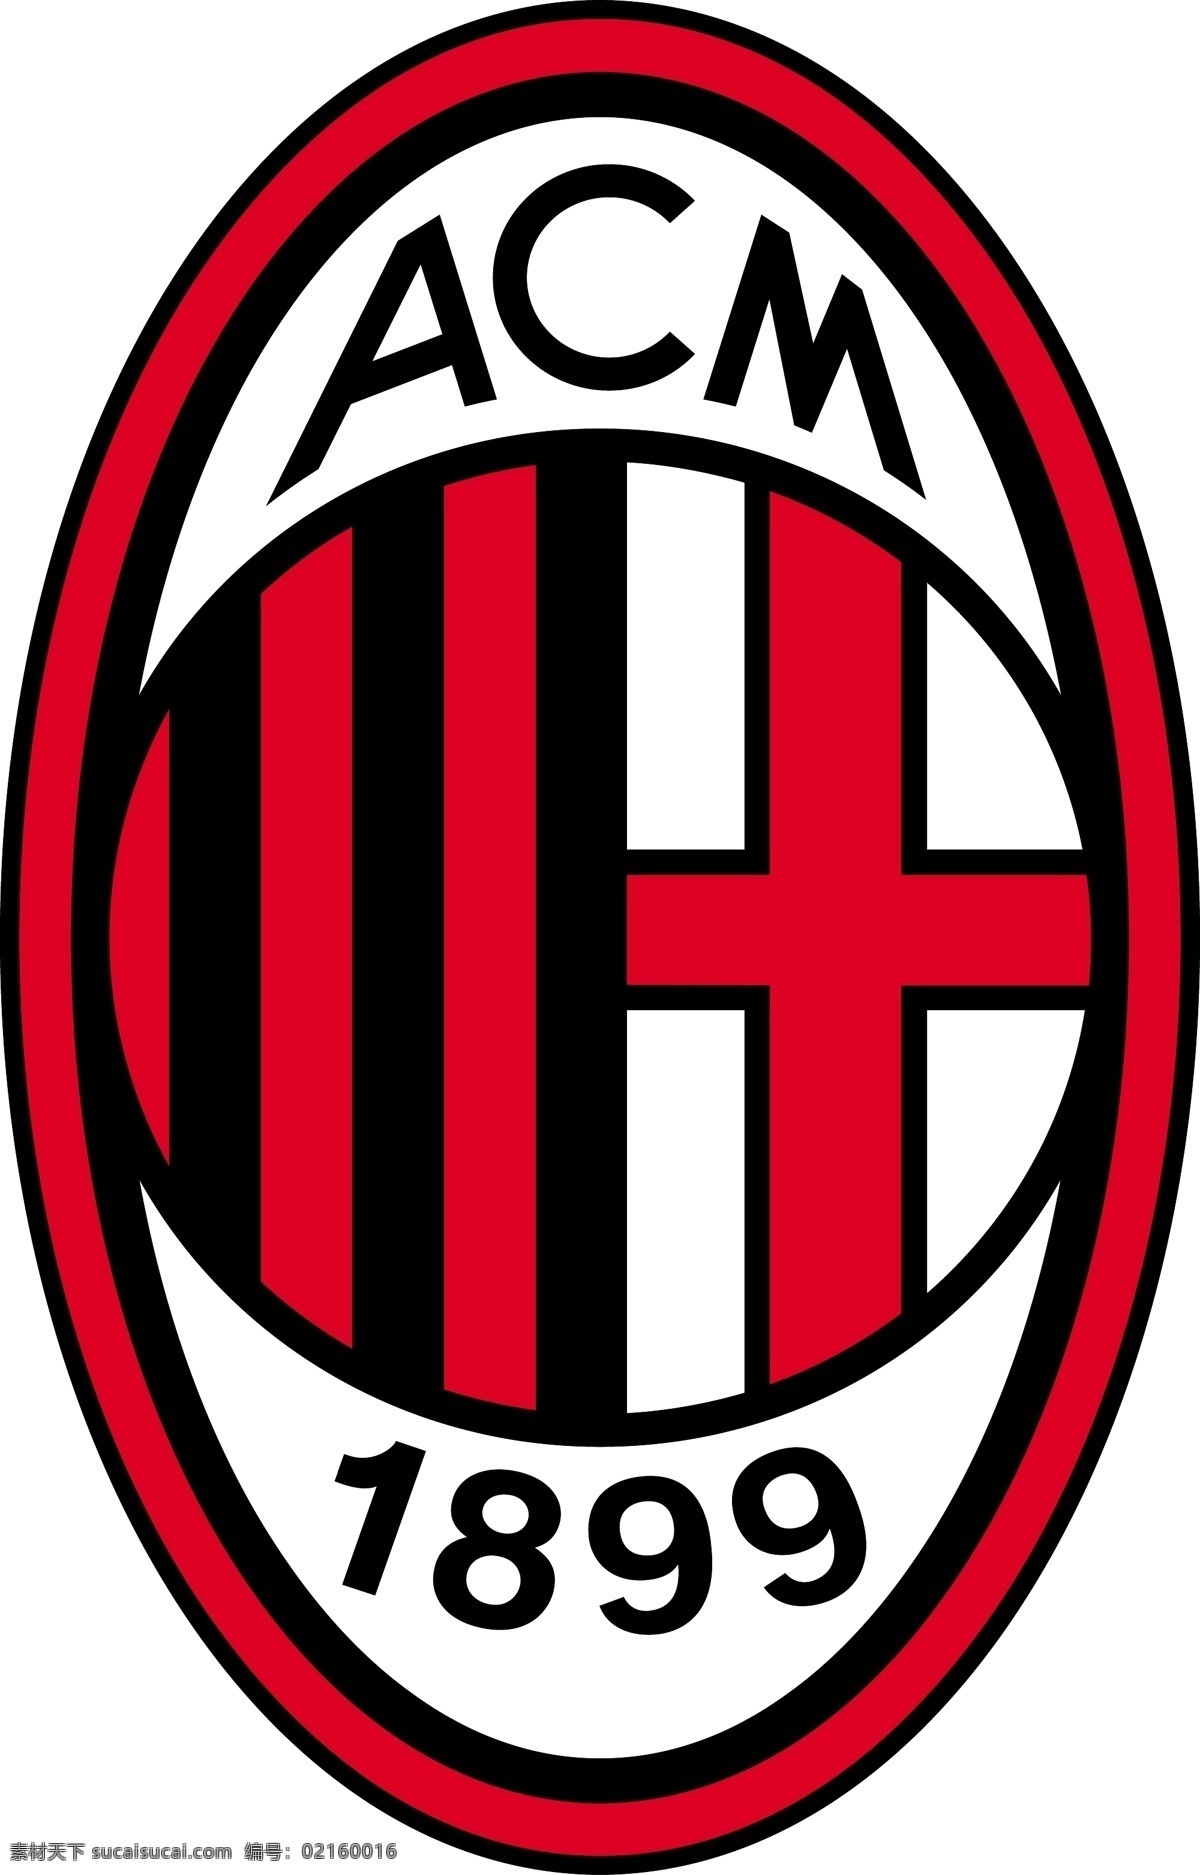 米兰 足球 俱乐部 徽标 ac米兰 意甲 意大利 甲级 联赛 比赛 logo设计